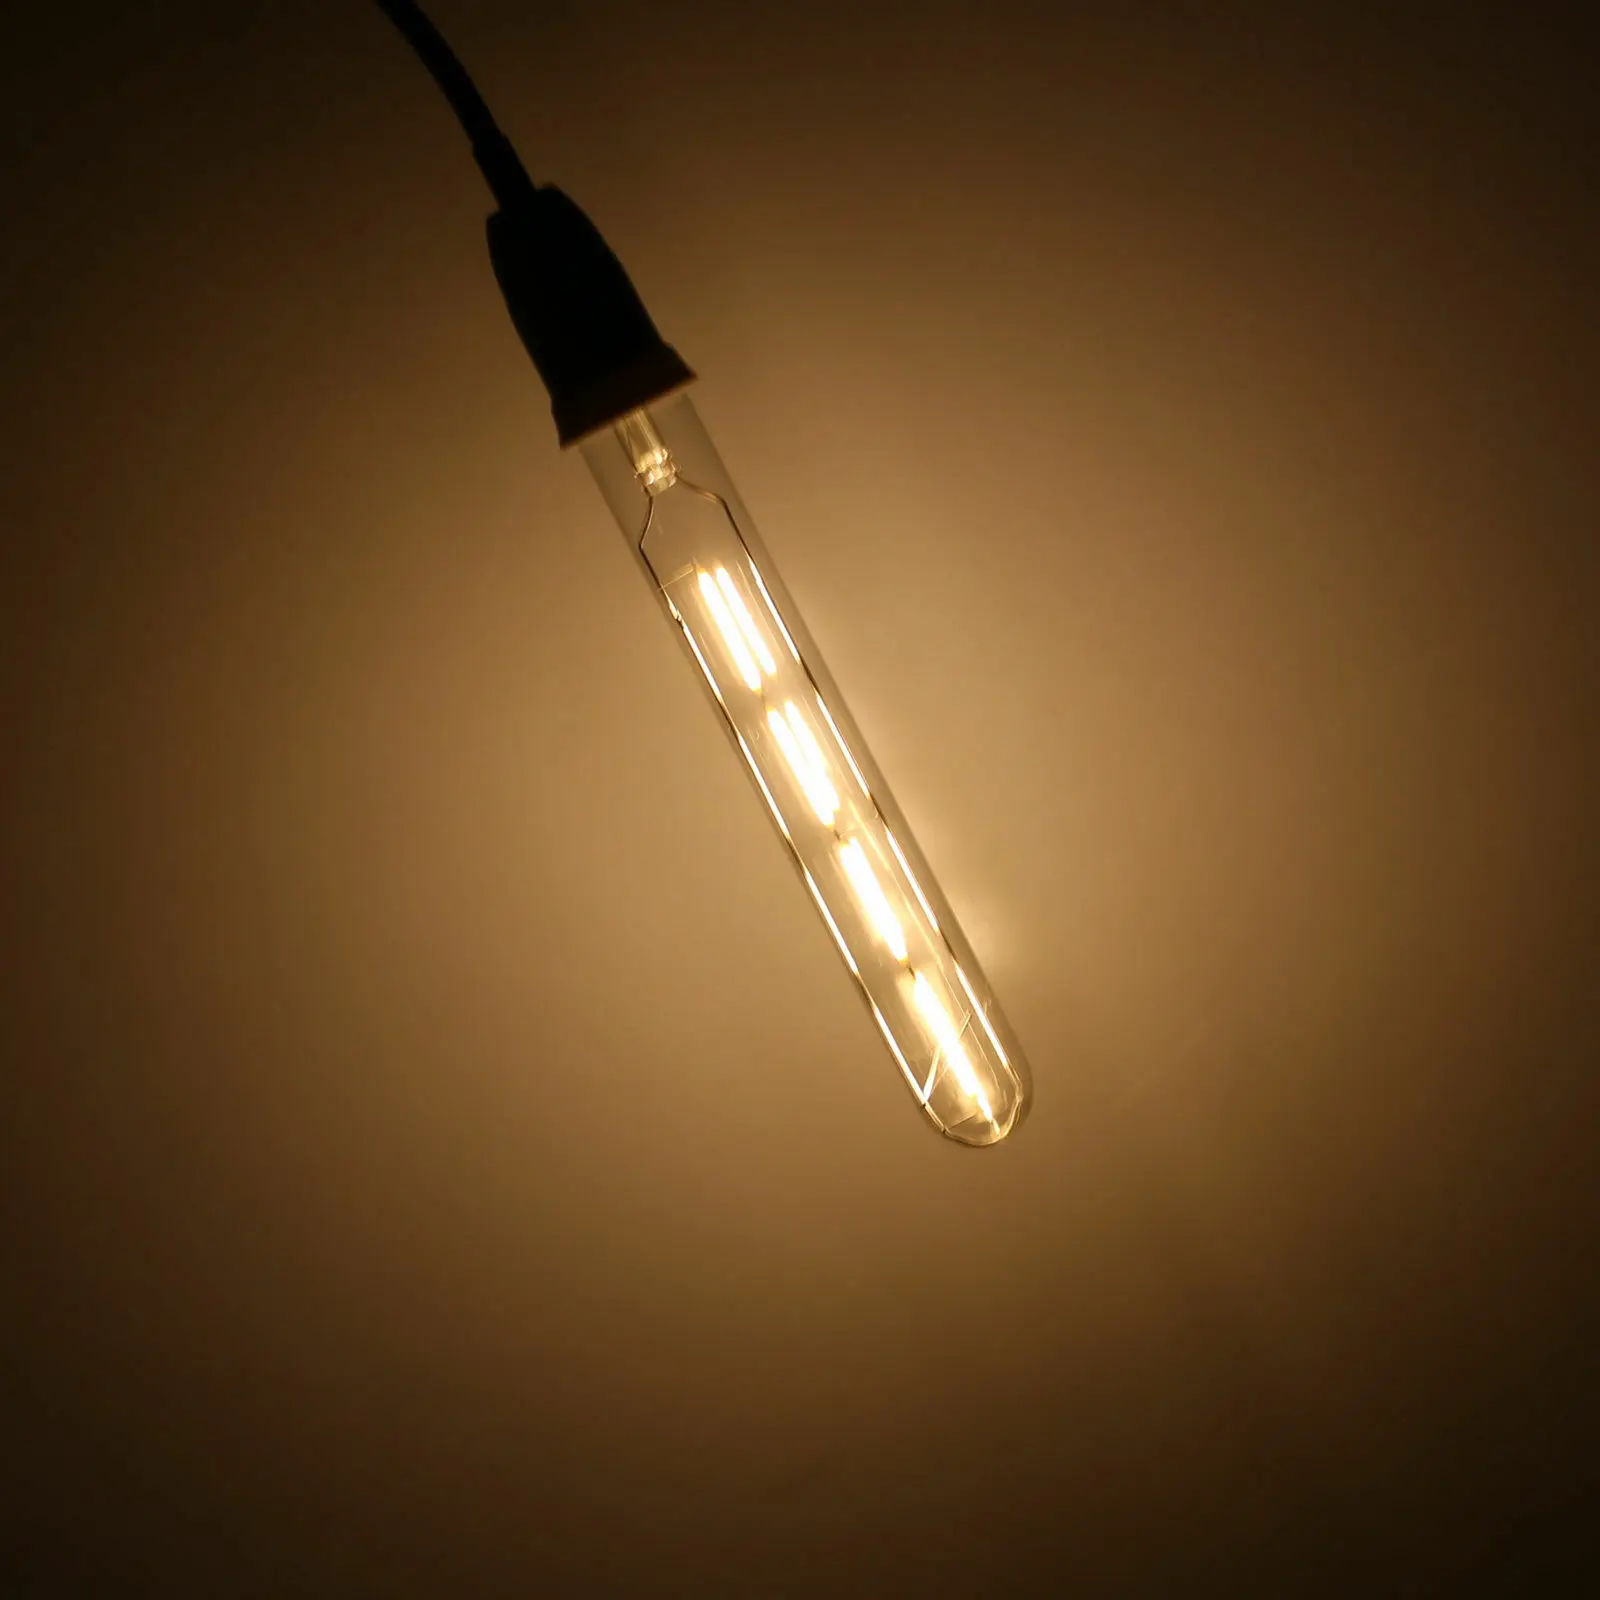 Цветной винтажный Ретро T30 E27 светодиодный COB лампа накаливания 5 Вт теплая белая лампа 110 В 220 В для украшение домашнего бара осветительные лампы - Испускаемый цвет: Тёплый белый